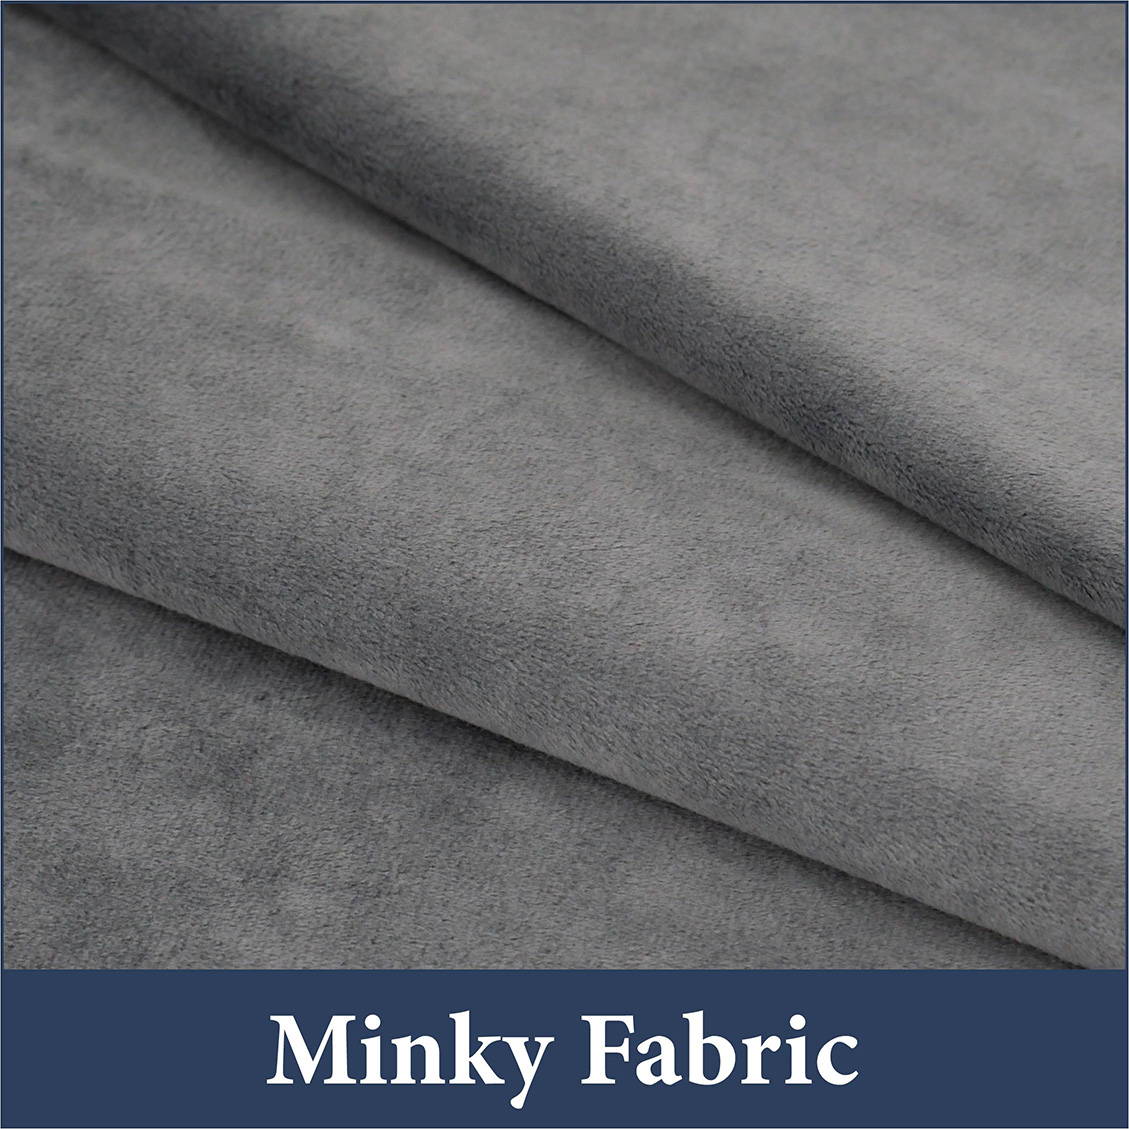 Minky fabric swatch